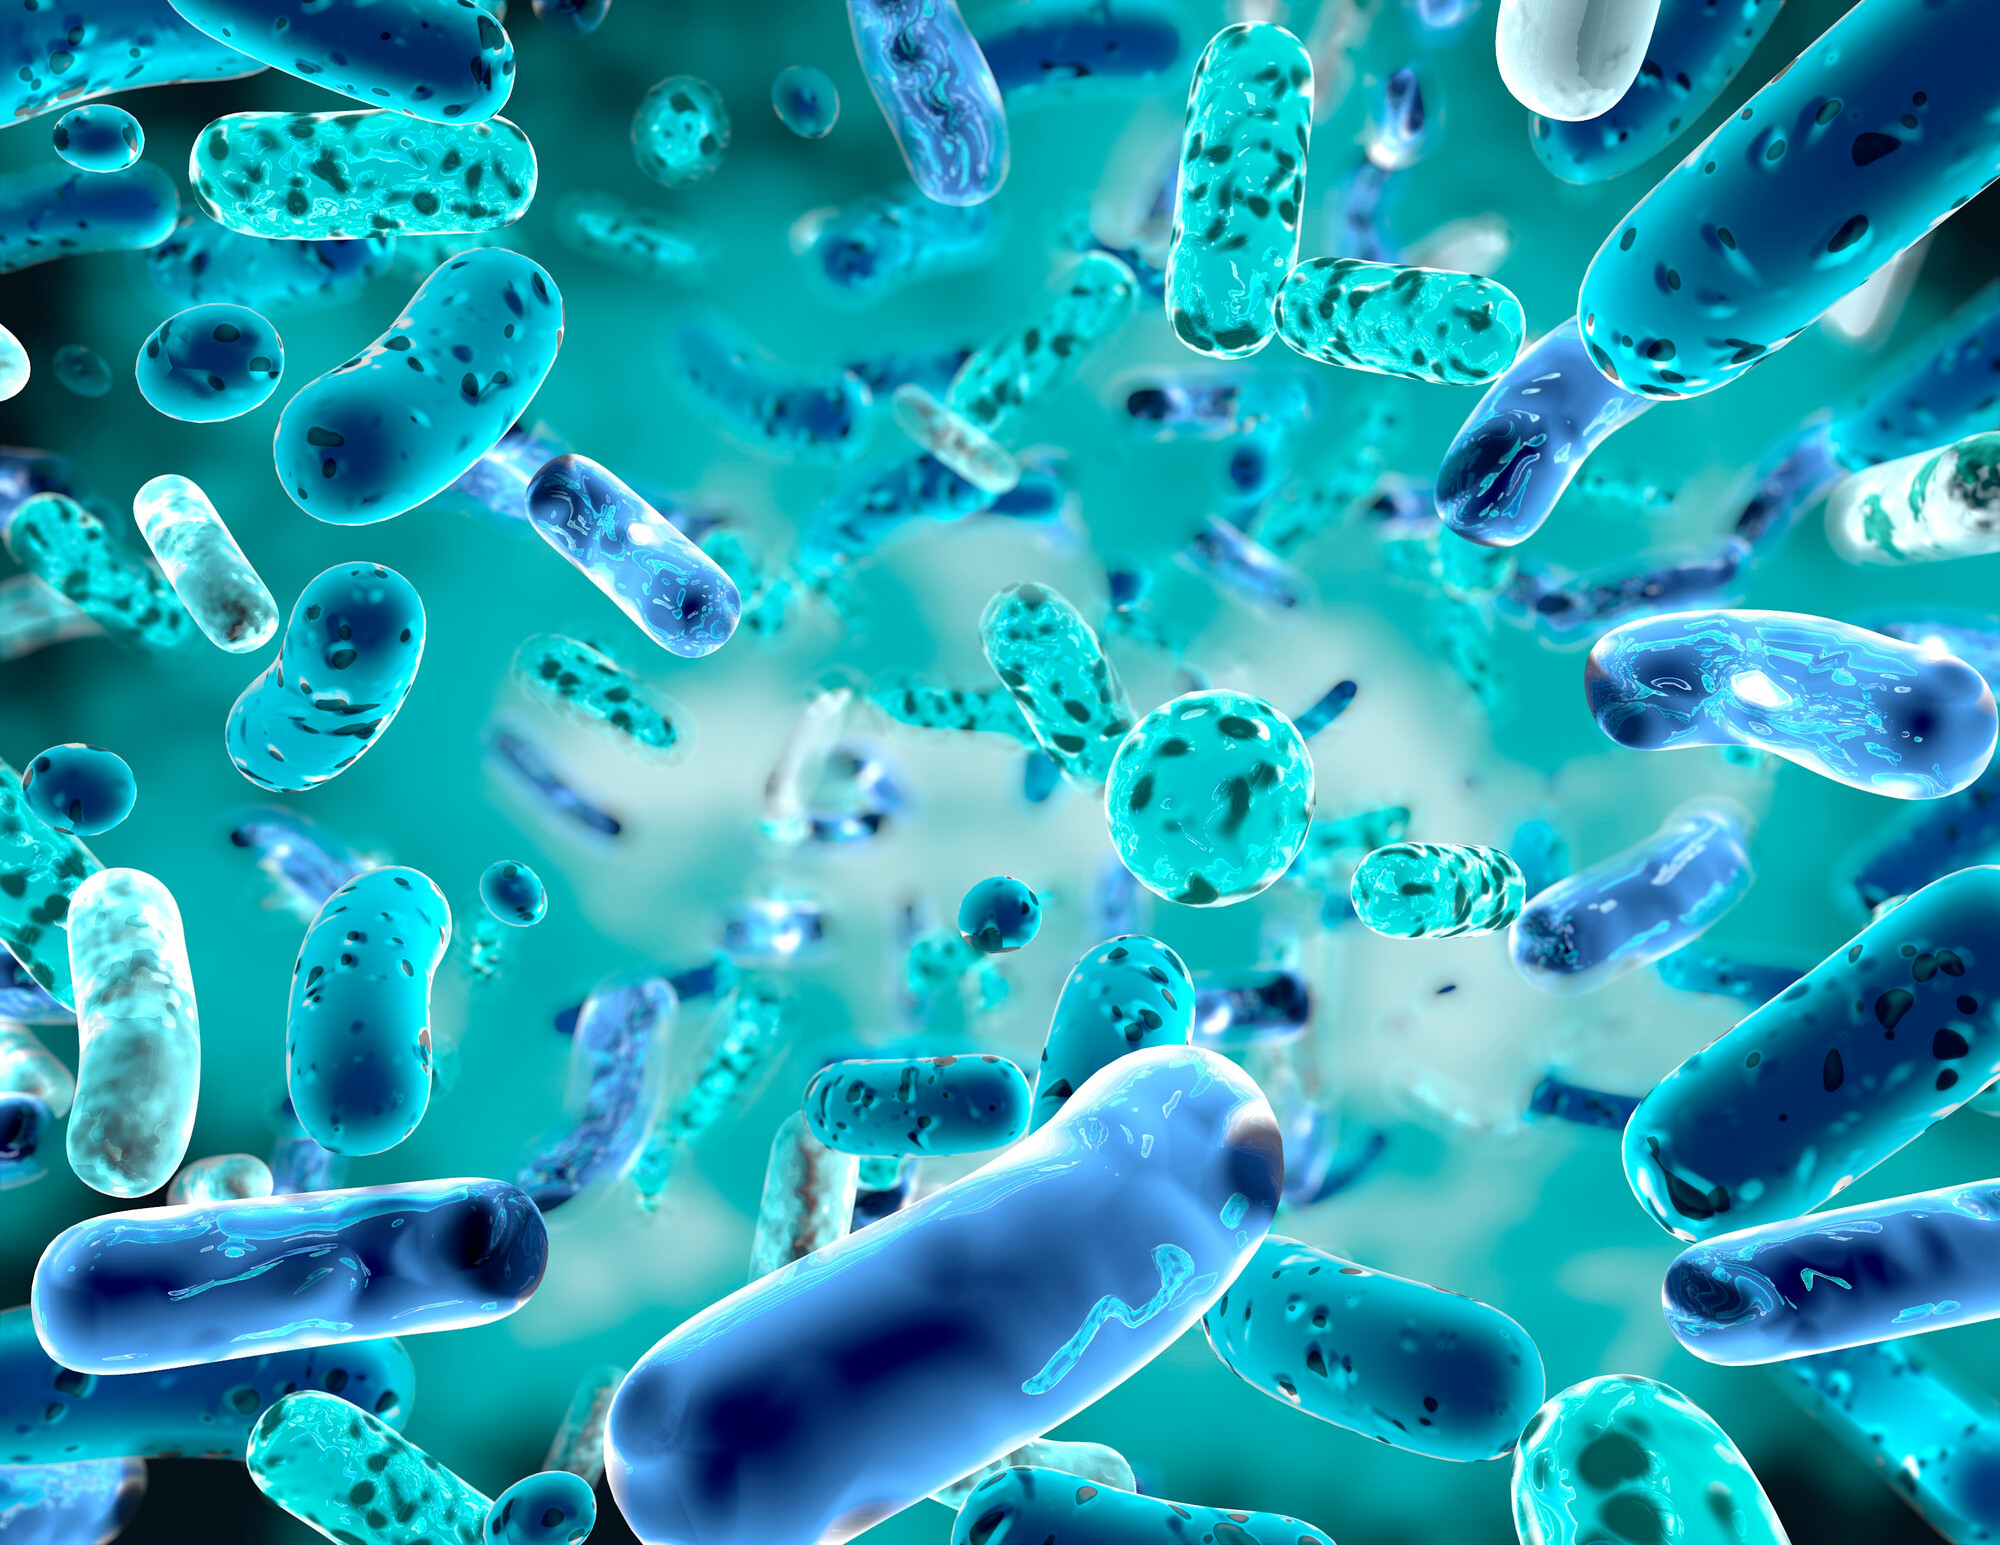 Bestimmte probiotische Stämme können möglicherweise dazu beitragen, akute Infektionen der oberen Atemwege zu verhindern. Cochrane hat die vorhandene Evidenz gesichtet.